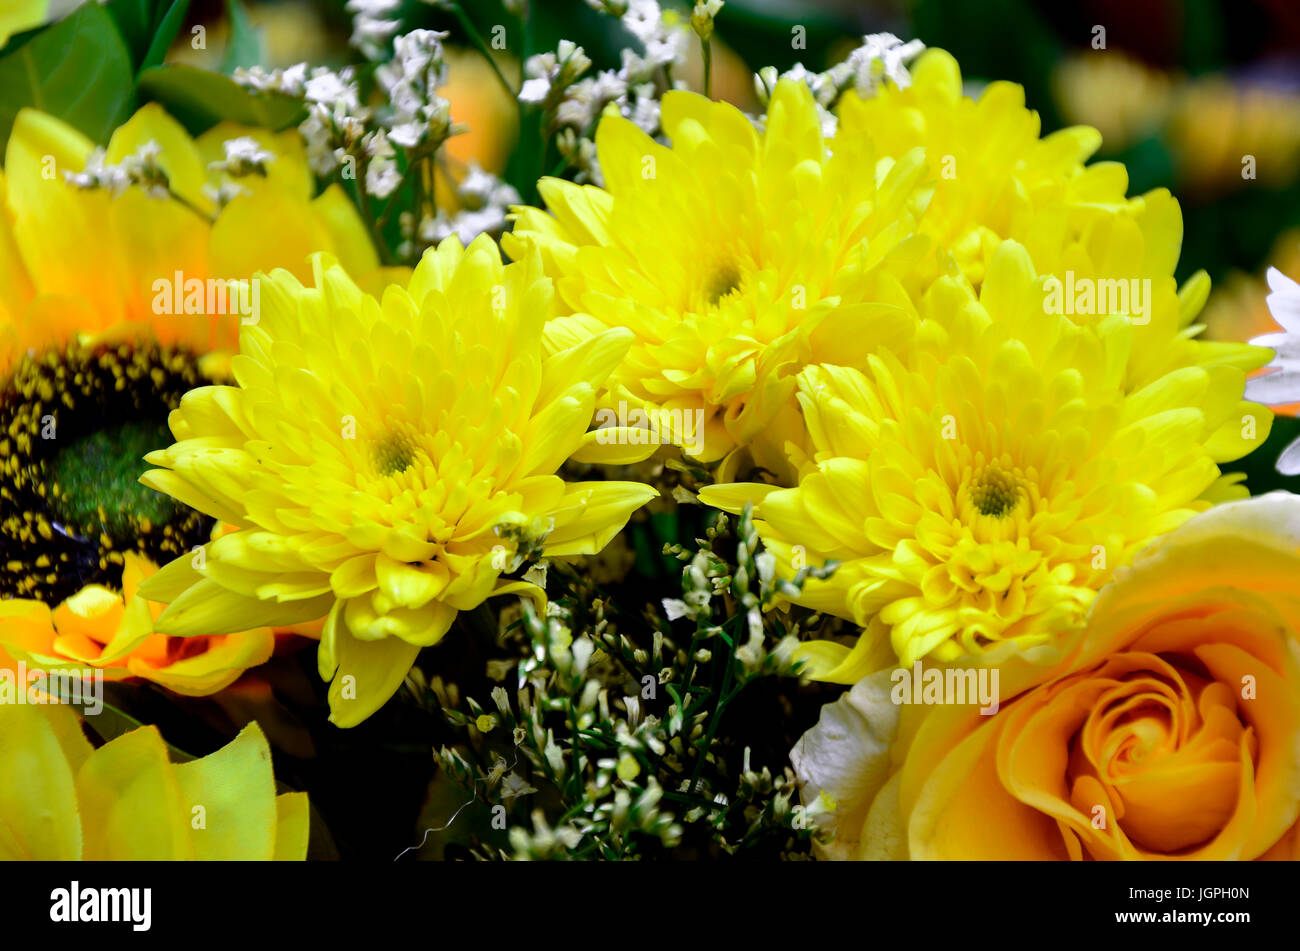 Blumenstrauß. Floral Arrangemant in gelben Ton. Stockfoto